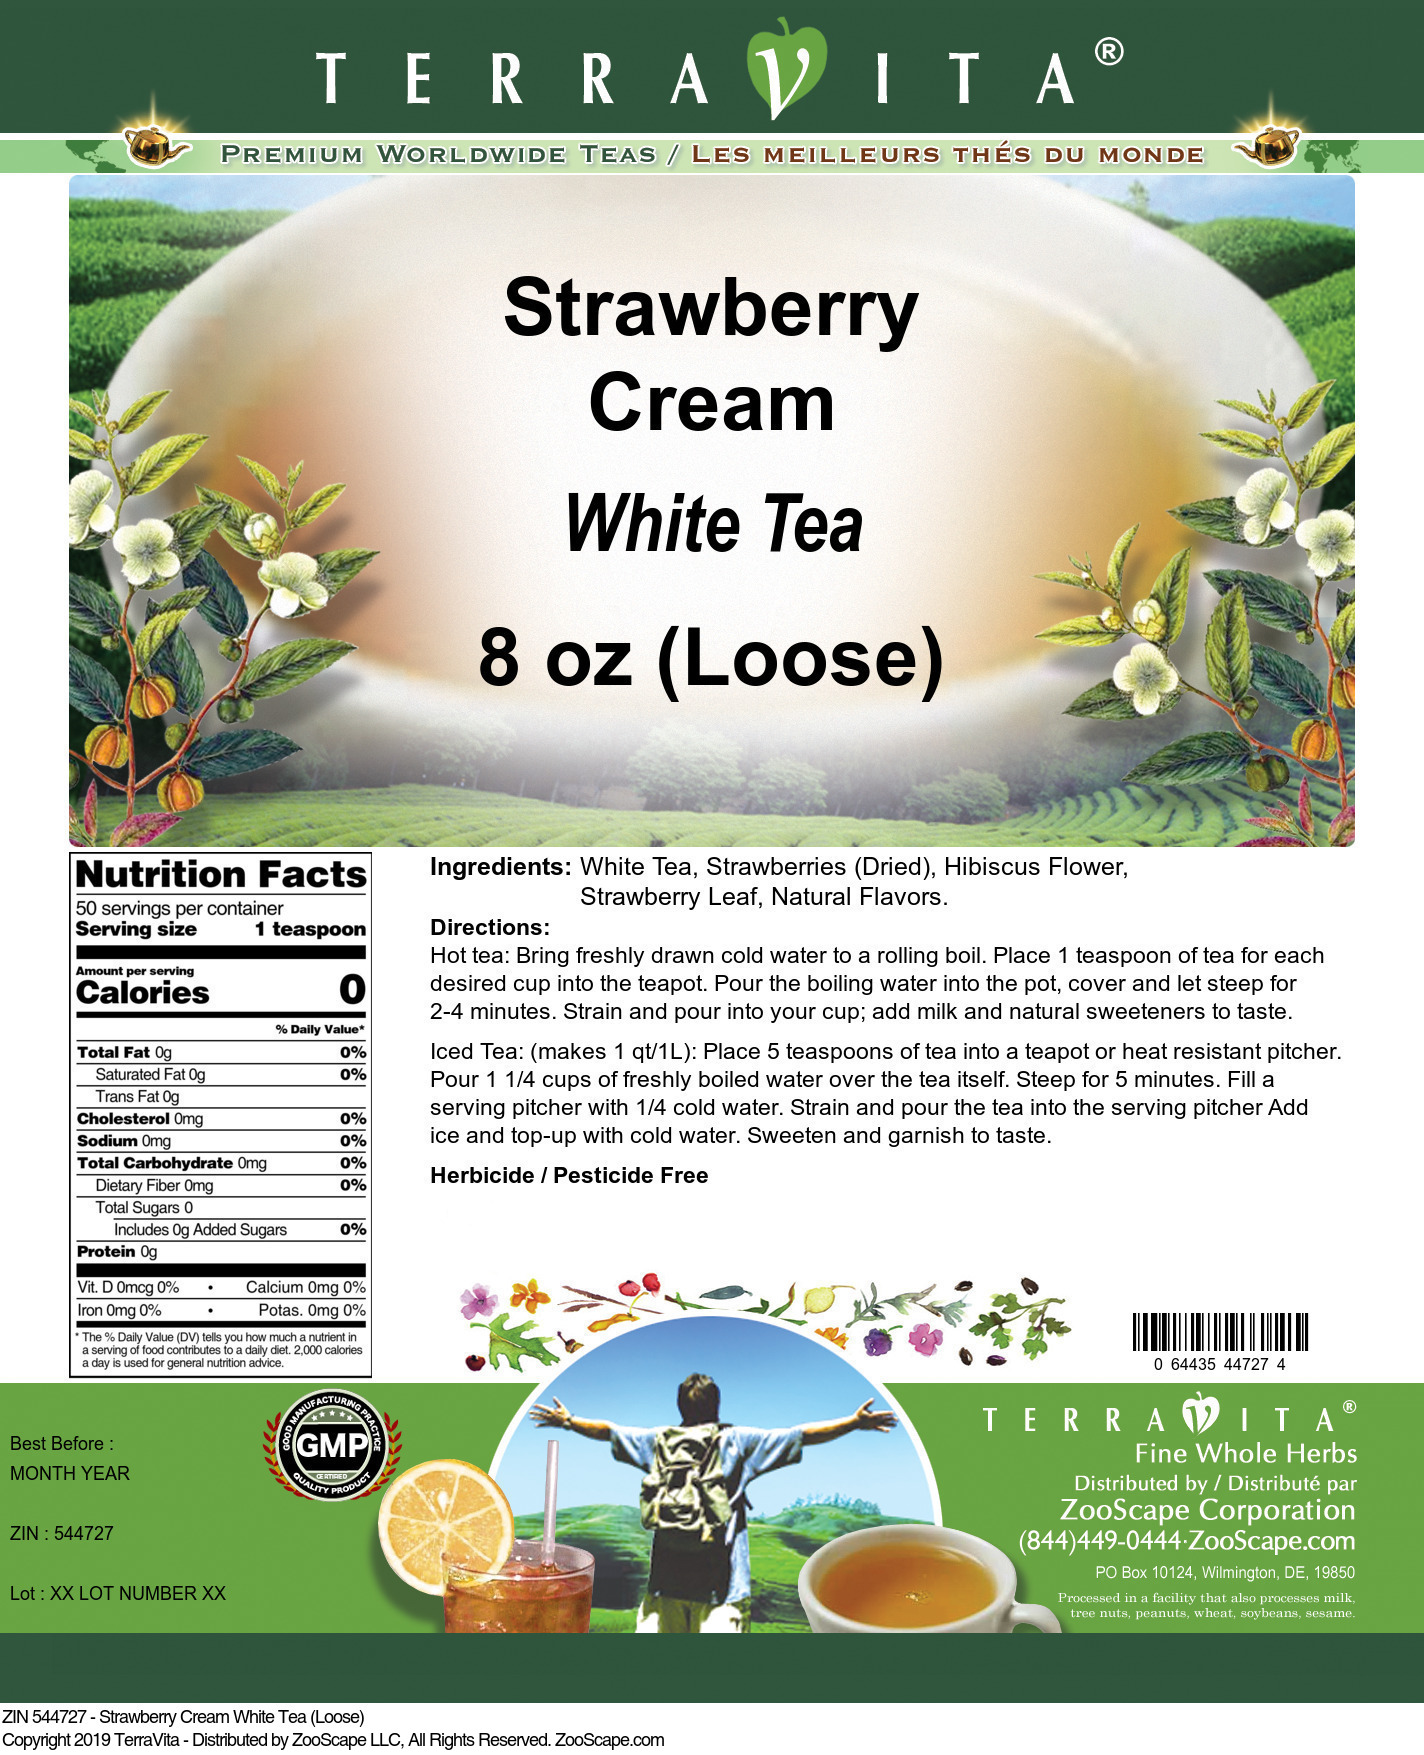 Strawberry Cream White Tea (Loose) - Label